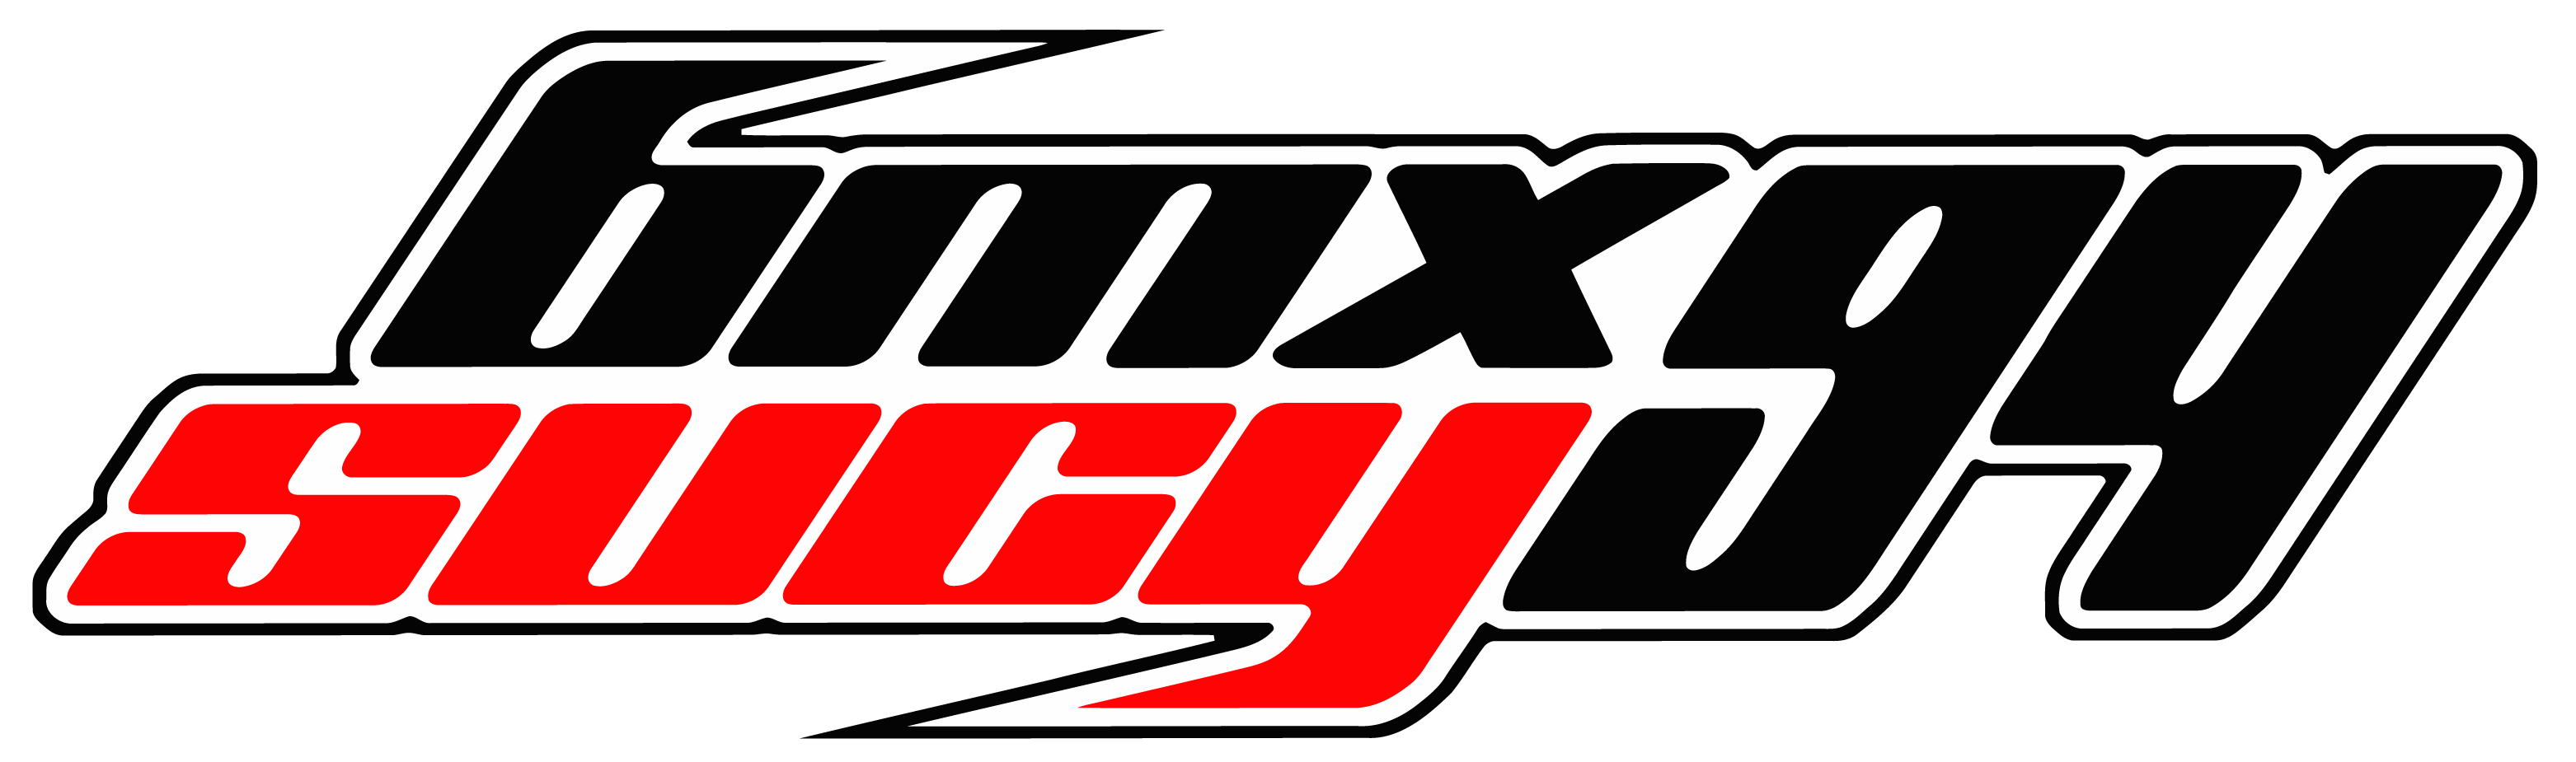 Logo BmxSucy